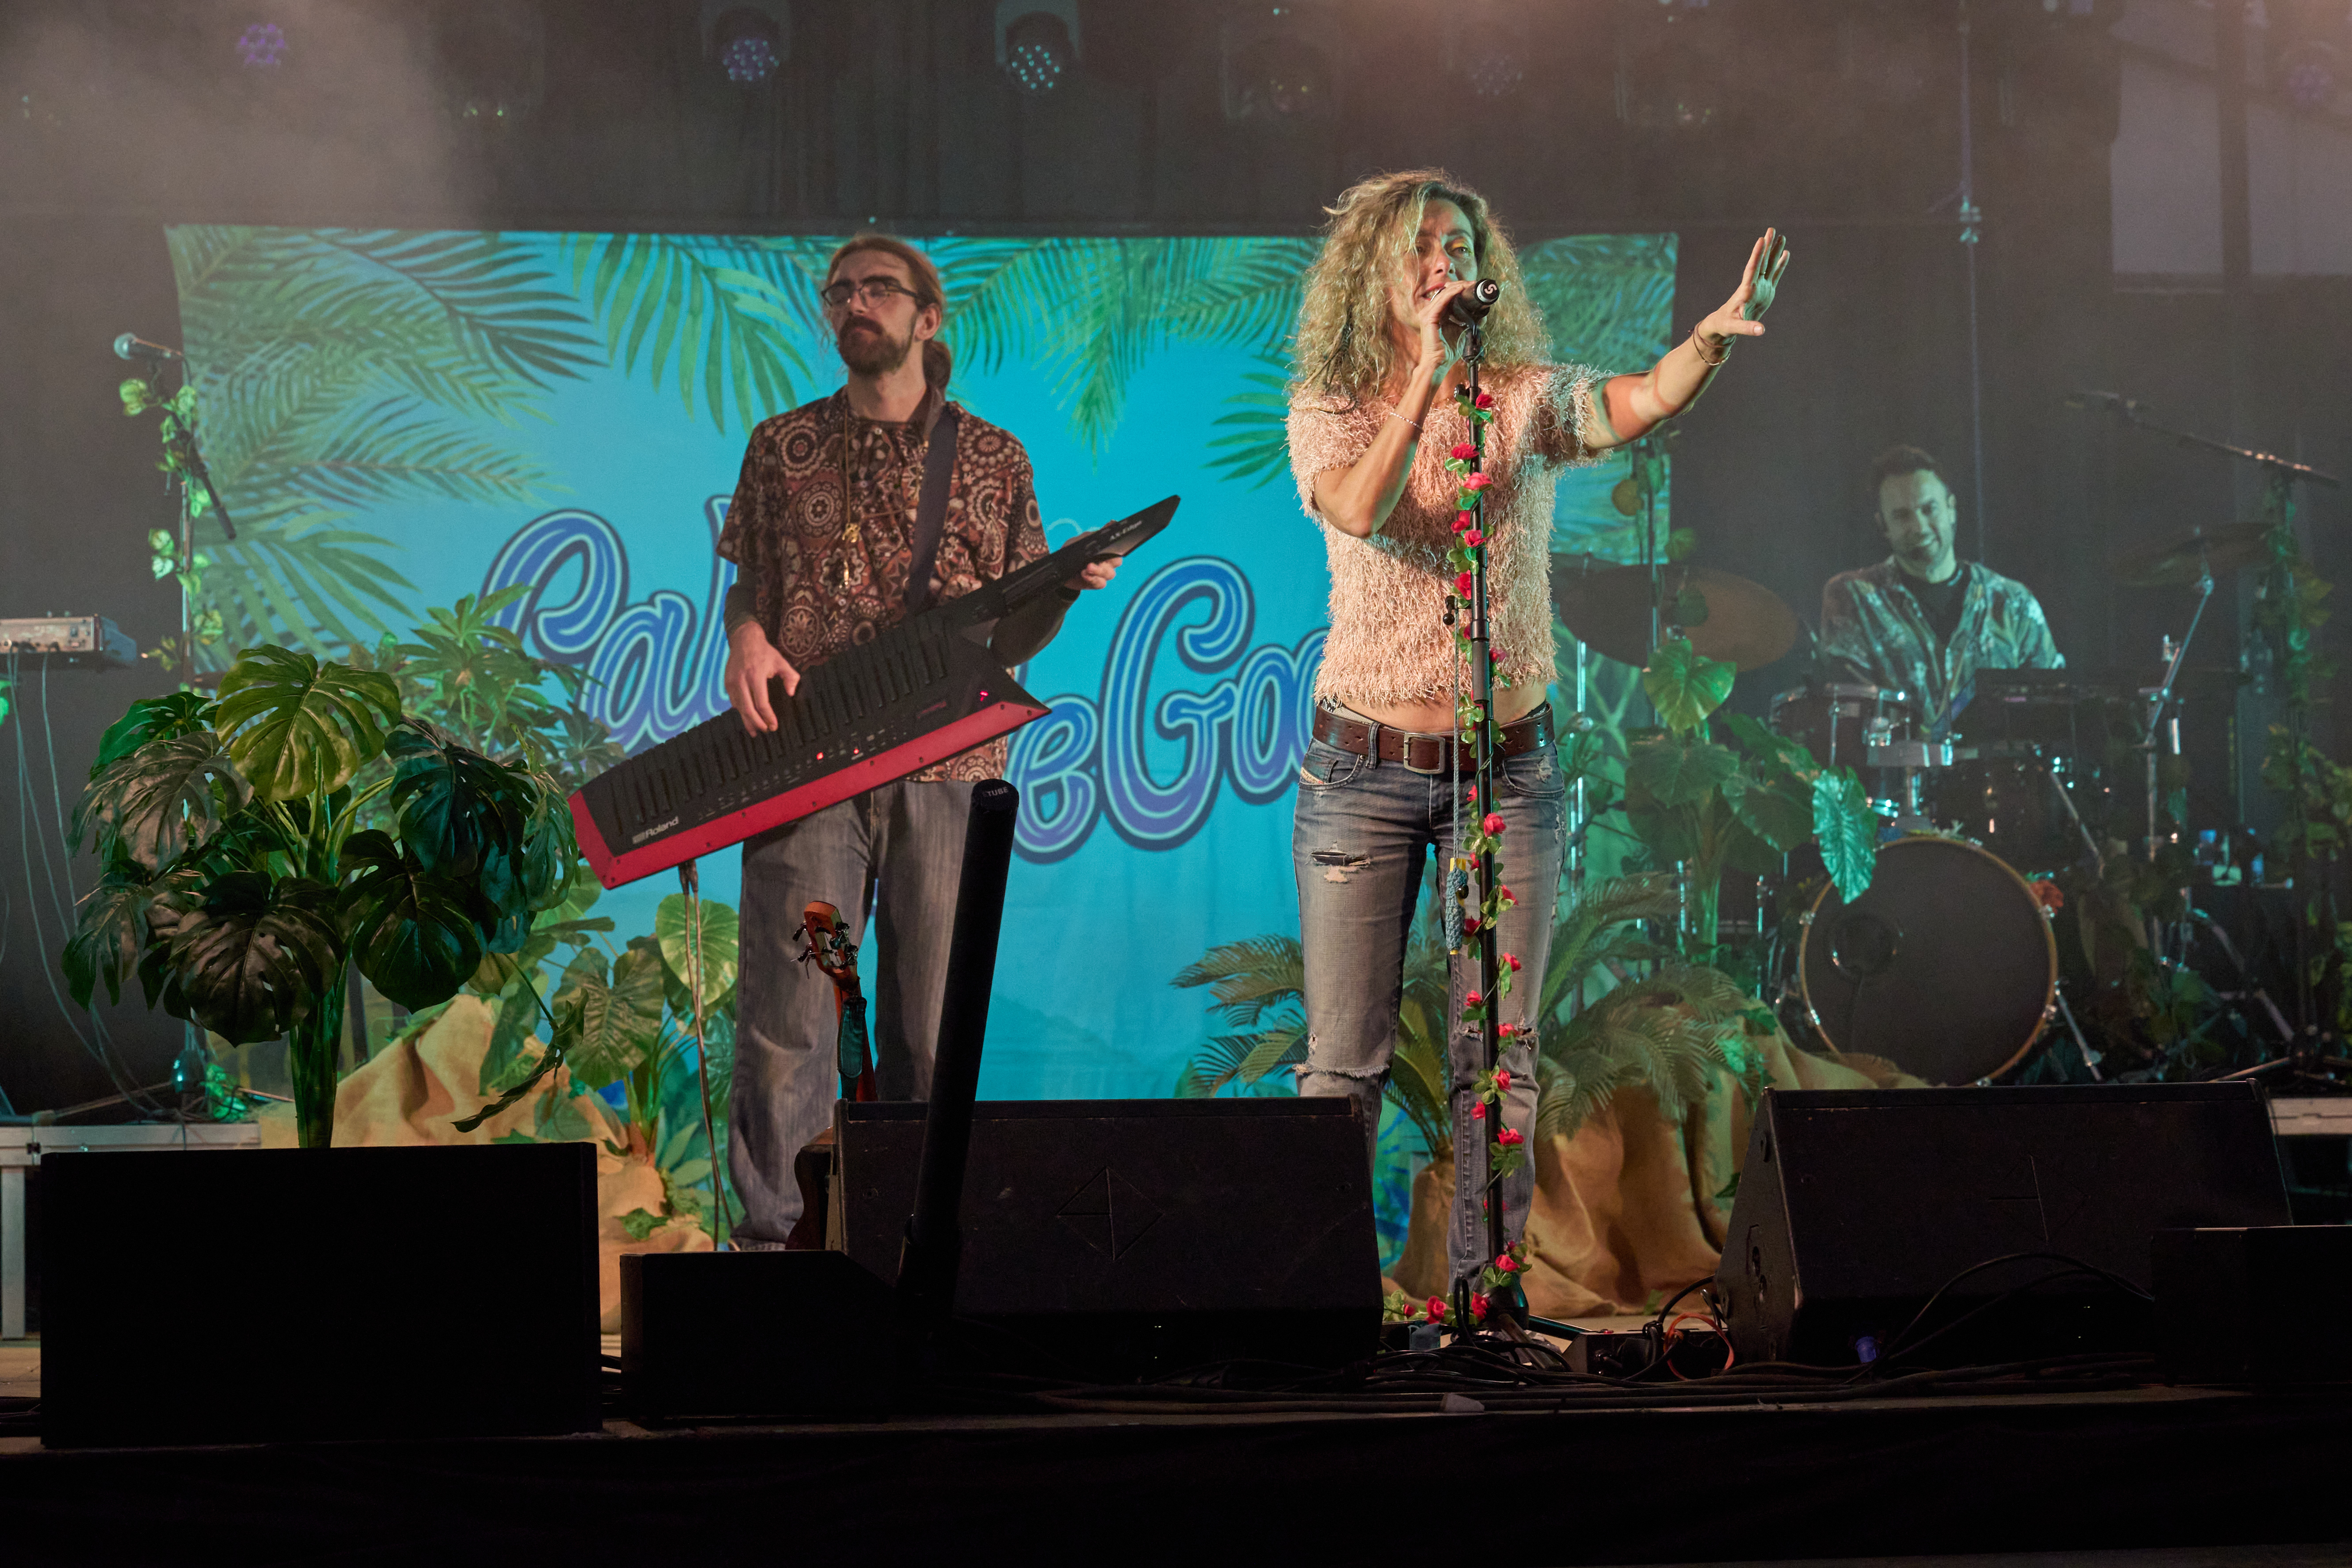 Lali Begood en concert, diumenge 27 de novembre. Envelat del parc de Ca l'Alfaro